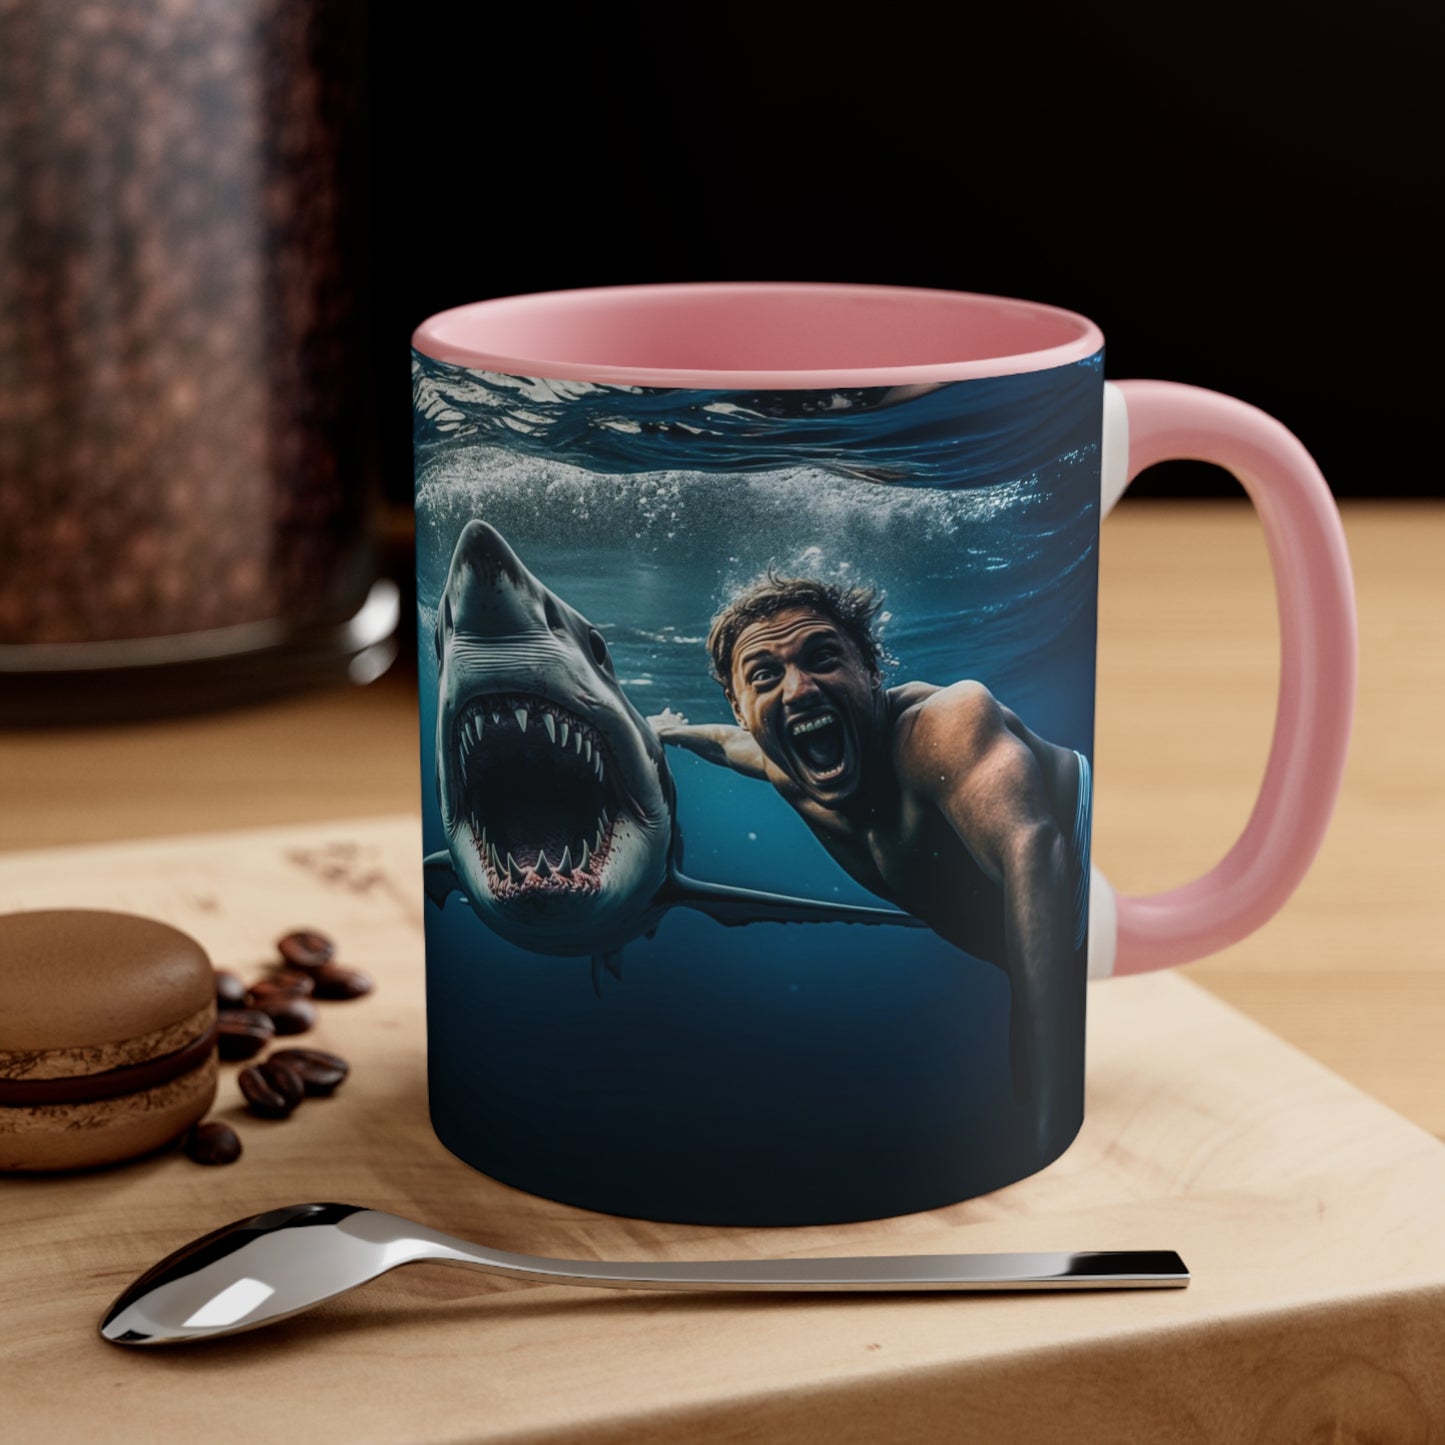 Ocean Explorer Coffee Mug, 11oz